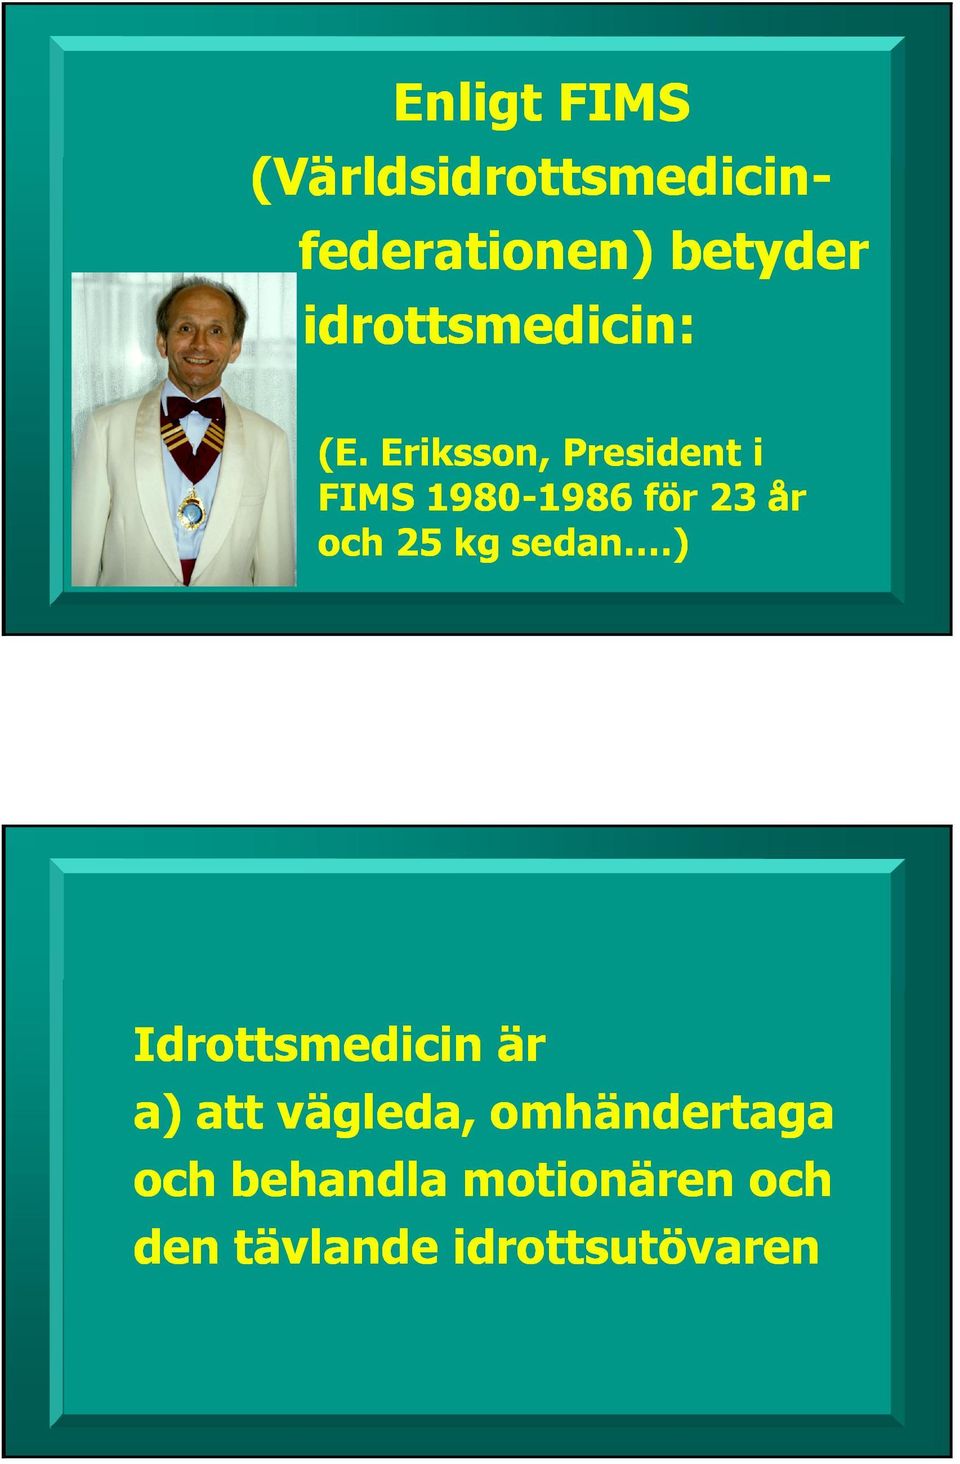 Eriksson, President i FIMS 19801980-1986 för 23 år och 25 kg sedan.